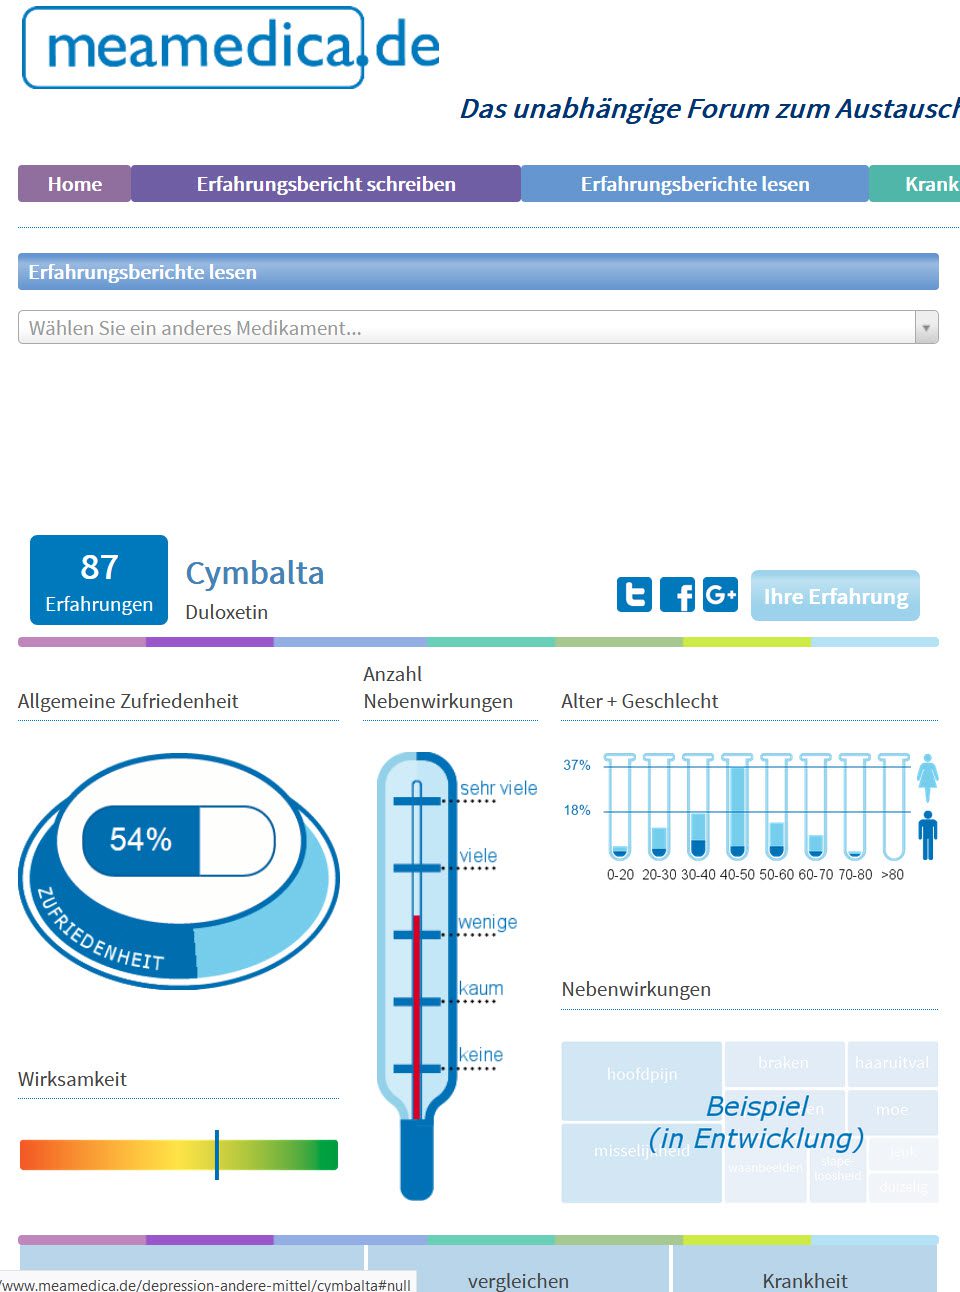 Duloxetin Erfahrungen (Cymbalta) - Informationen zu Nebenwirkungen, Wirksamkeit, Zufriedenheit und mehr (Screenshot meamedica.de)